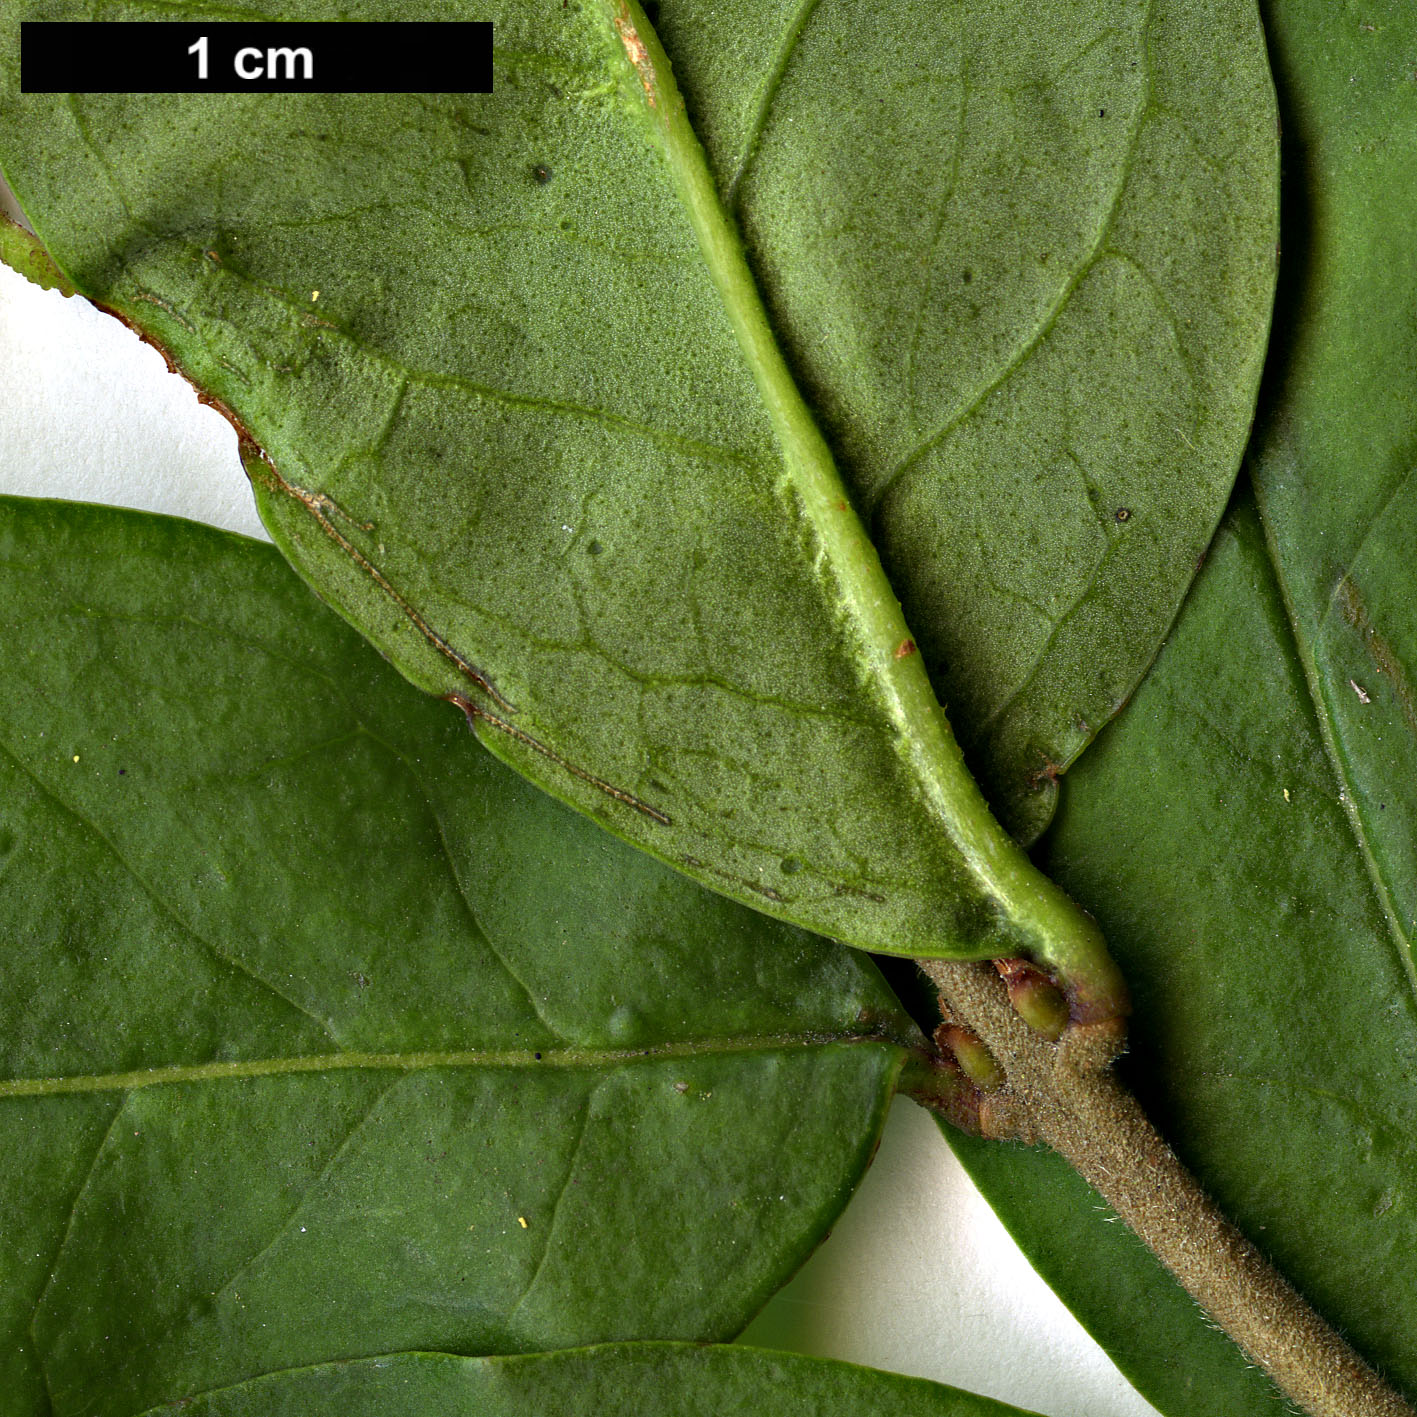 High resolution image: Family: Oleaceae - Genus: Ligustrum - Taxon: obtusifolium - SpeciesSub: subsp. suave